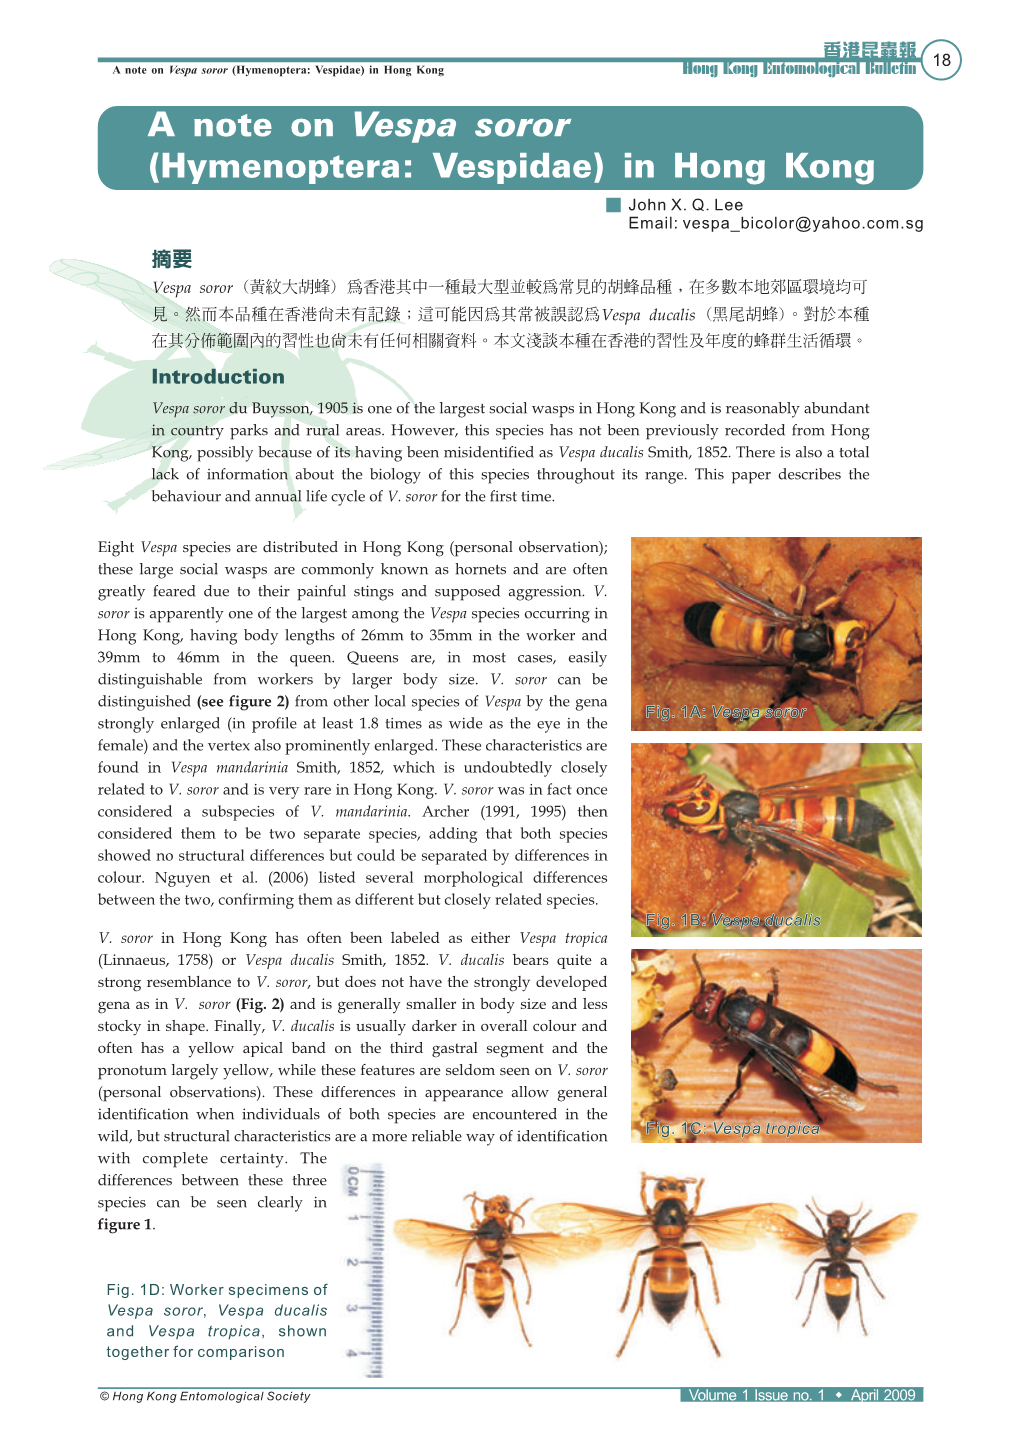 Note on Vespa Soror (Hymenoptera: Vespidae) in Hong Kong Hong Kong Entomological Bulletin - a New Record of Stick Insect from Hong Kong